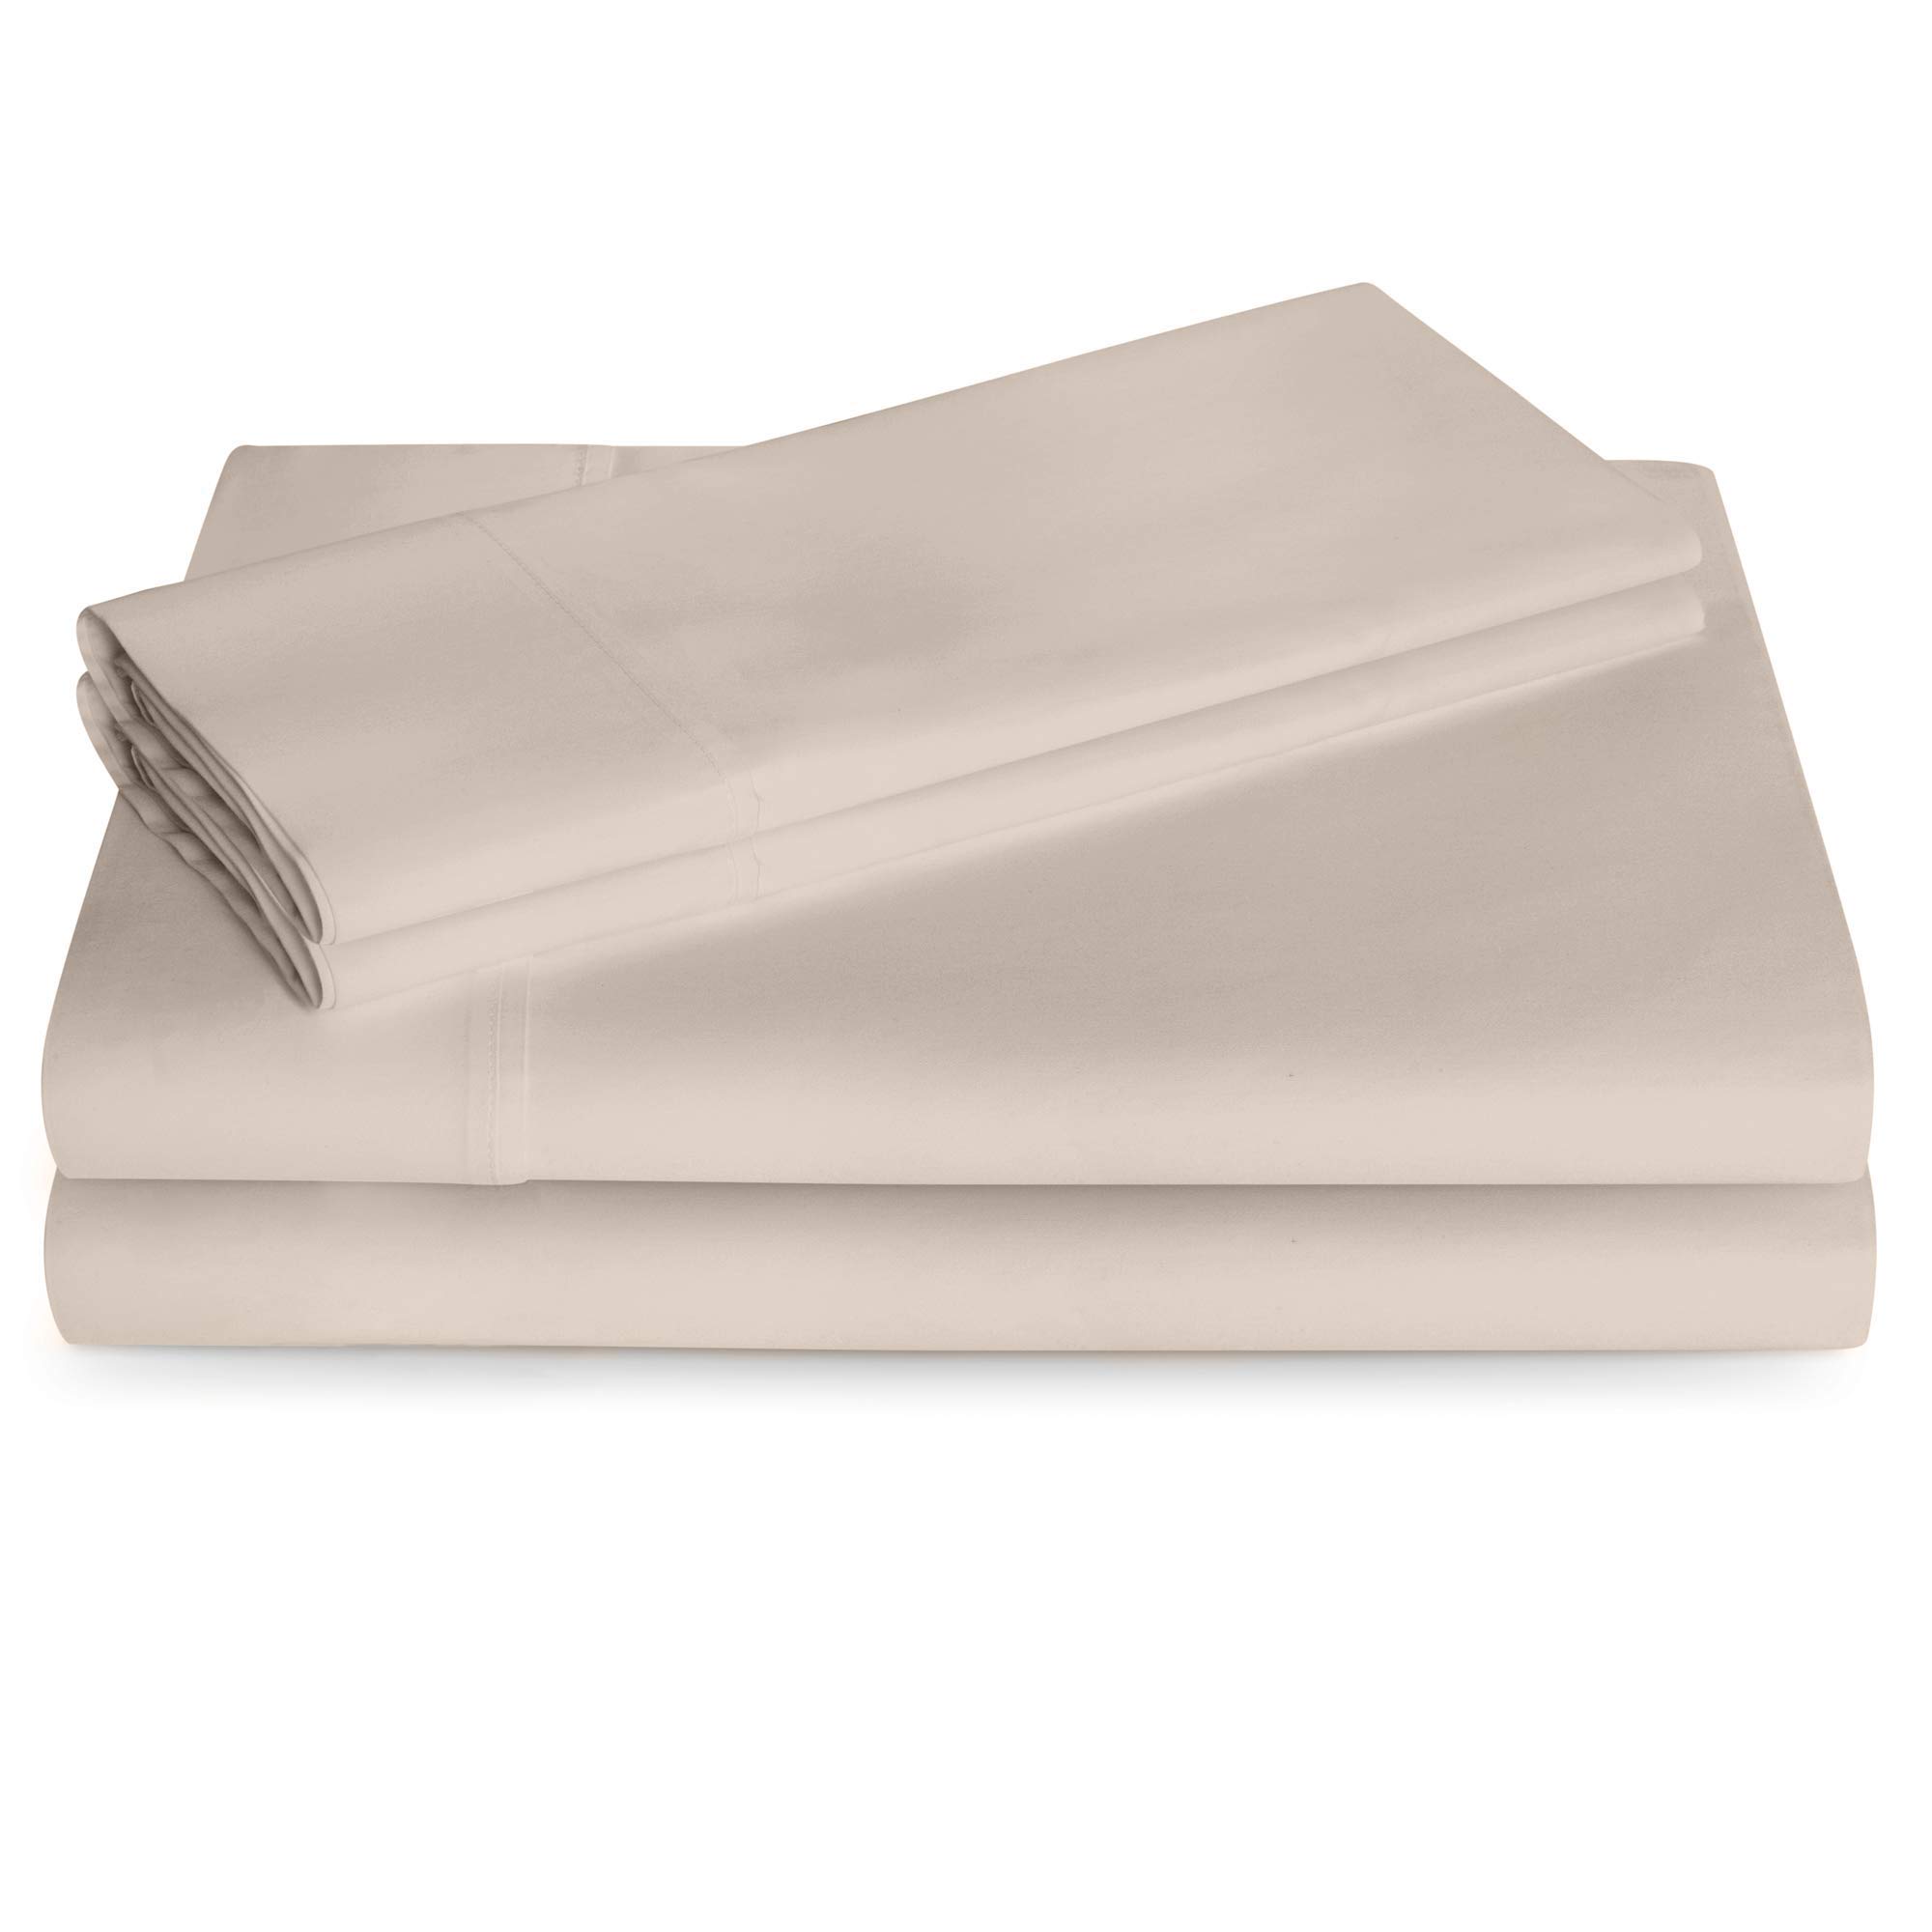 Book Cover Linenspa 600 Thread Count Ultra Soft, Deep Pocket Cotton Blend Sheet Set - Queen - Sand